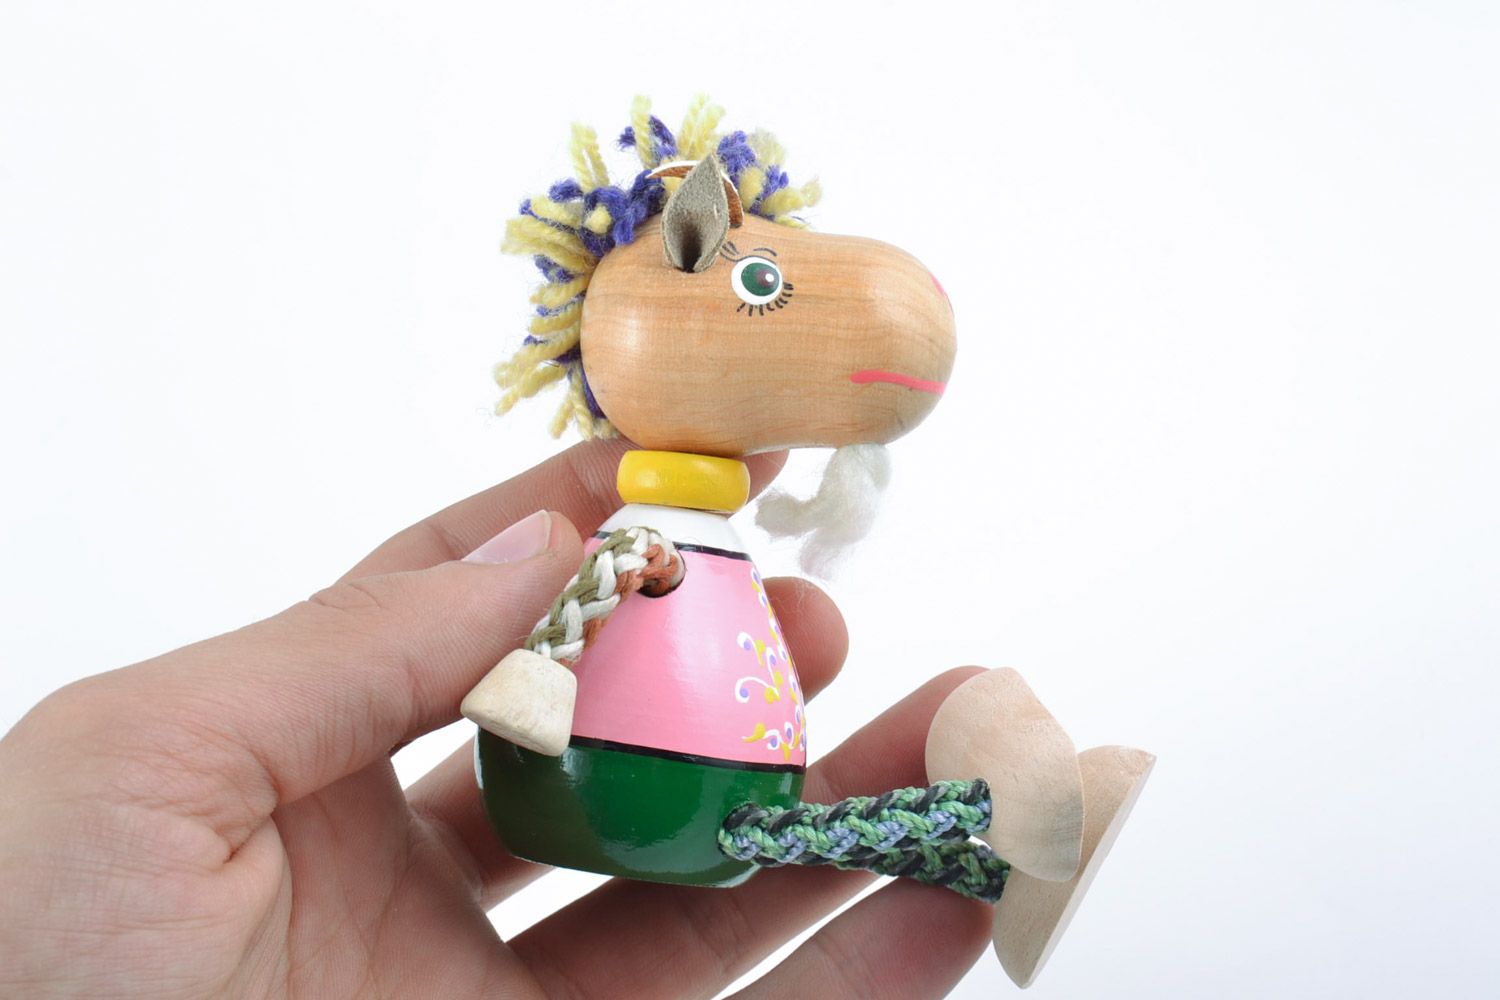 Designer schönes Öko handmade Spielzeug Bock mit Farben bemalt für kleine Kinder foto 2